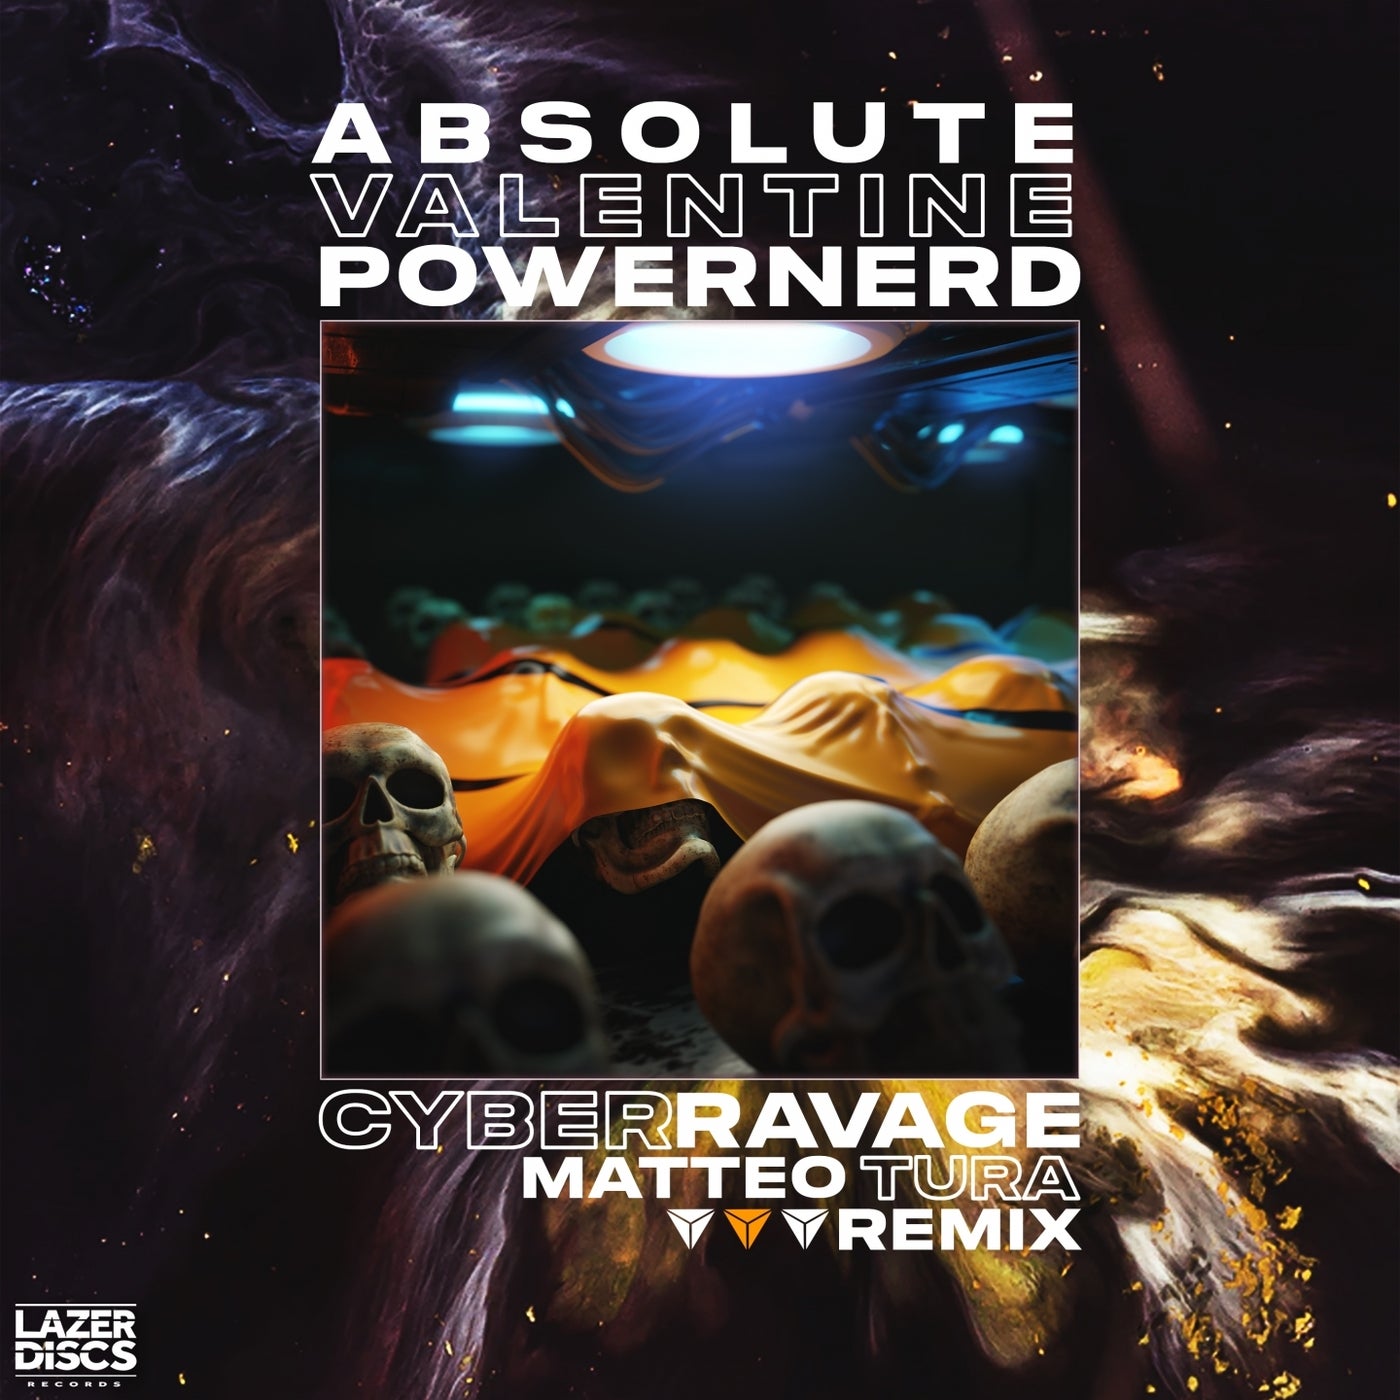 Cyber Ravage (Matteo Tura Remix)